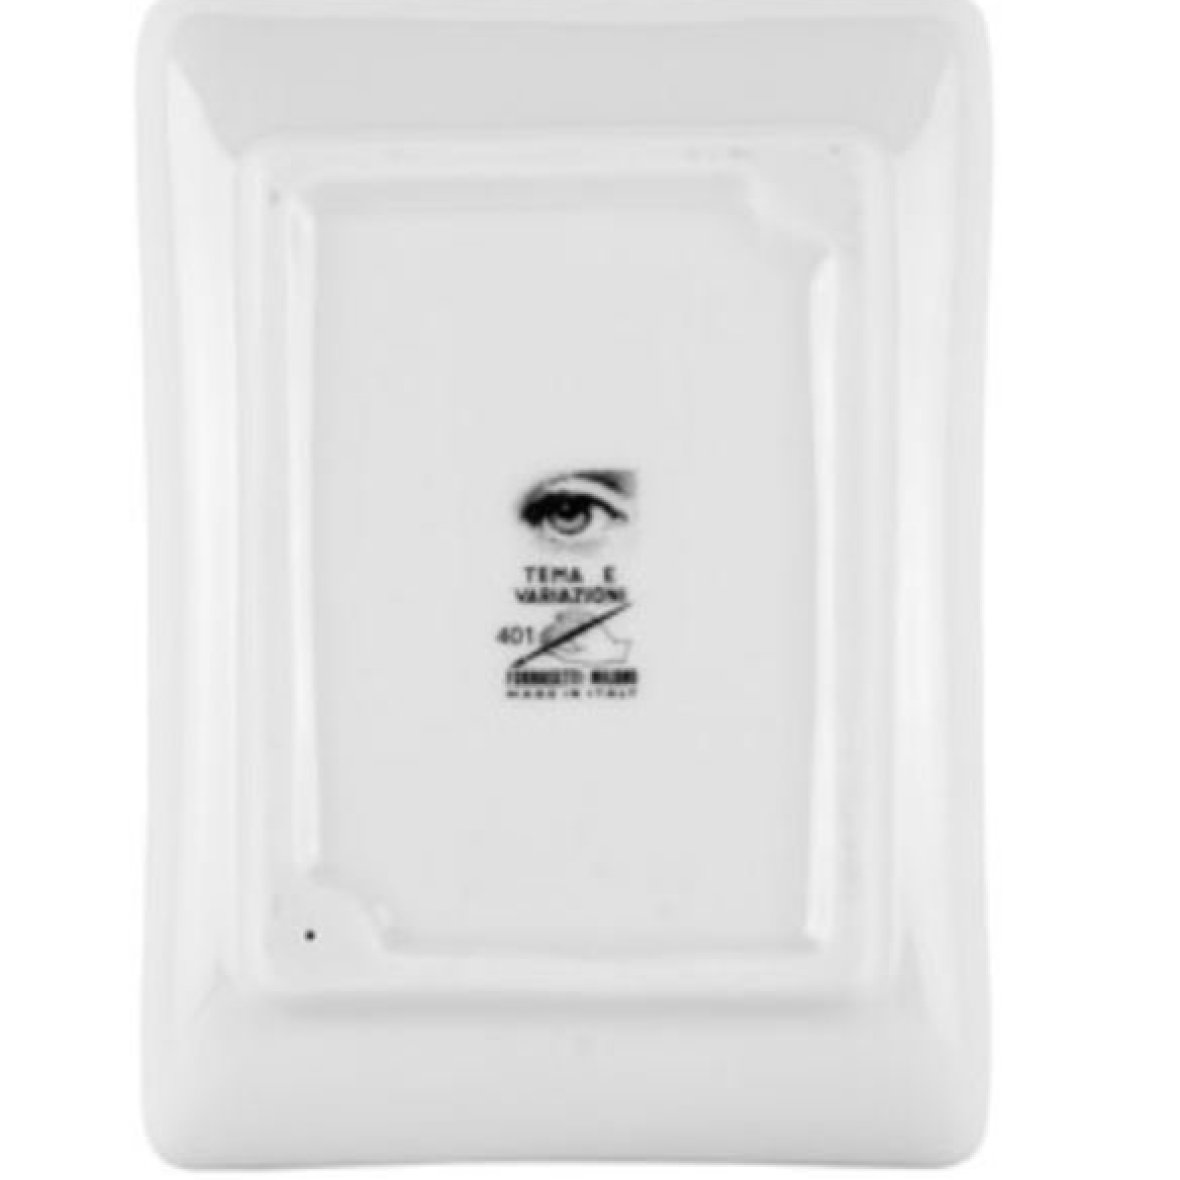 rectangular-ashtray-tema-e-variazioni-n-401-white-black2